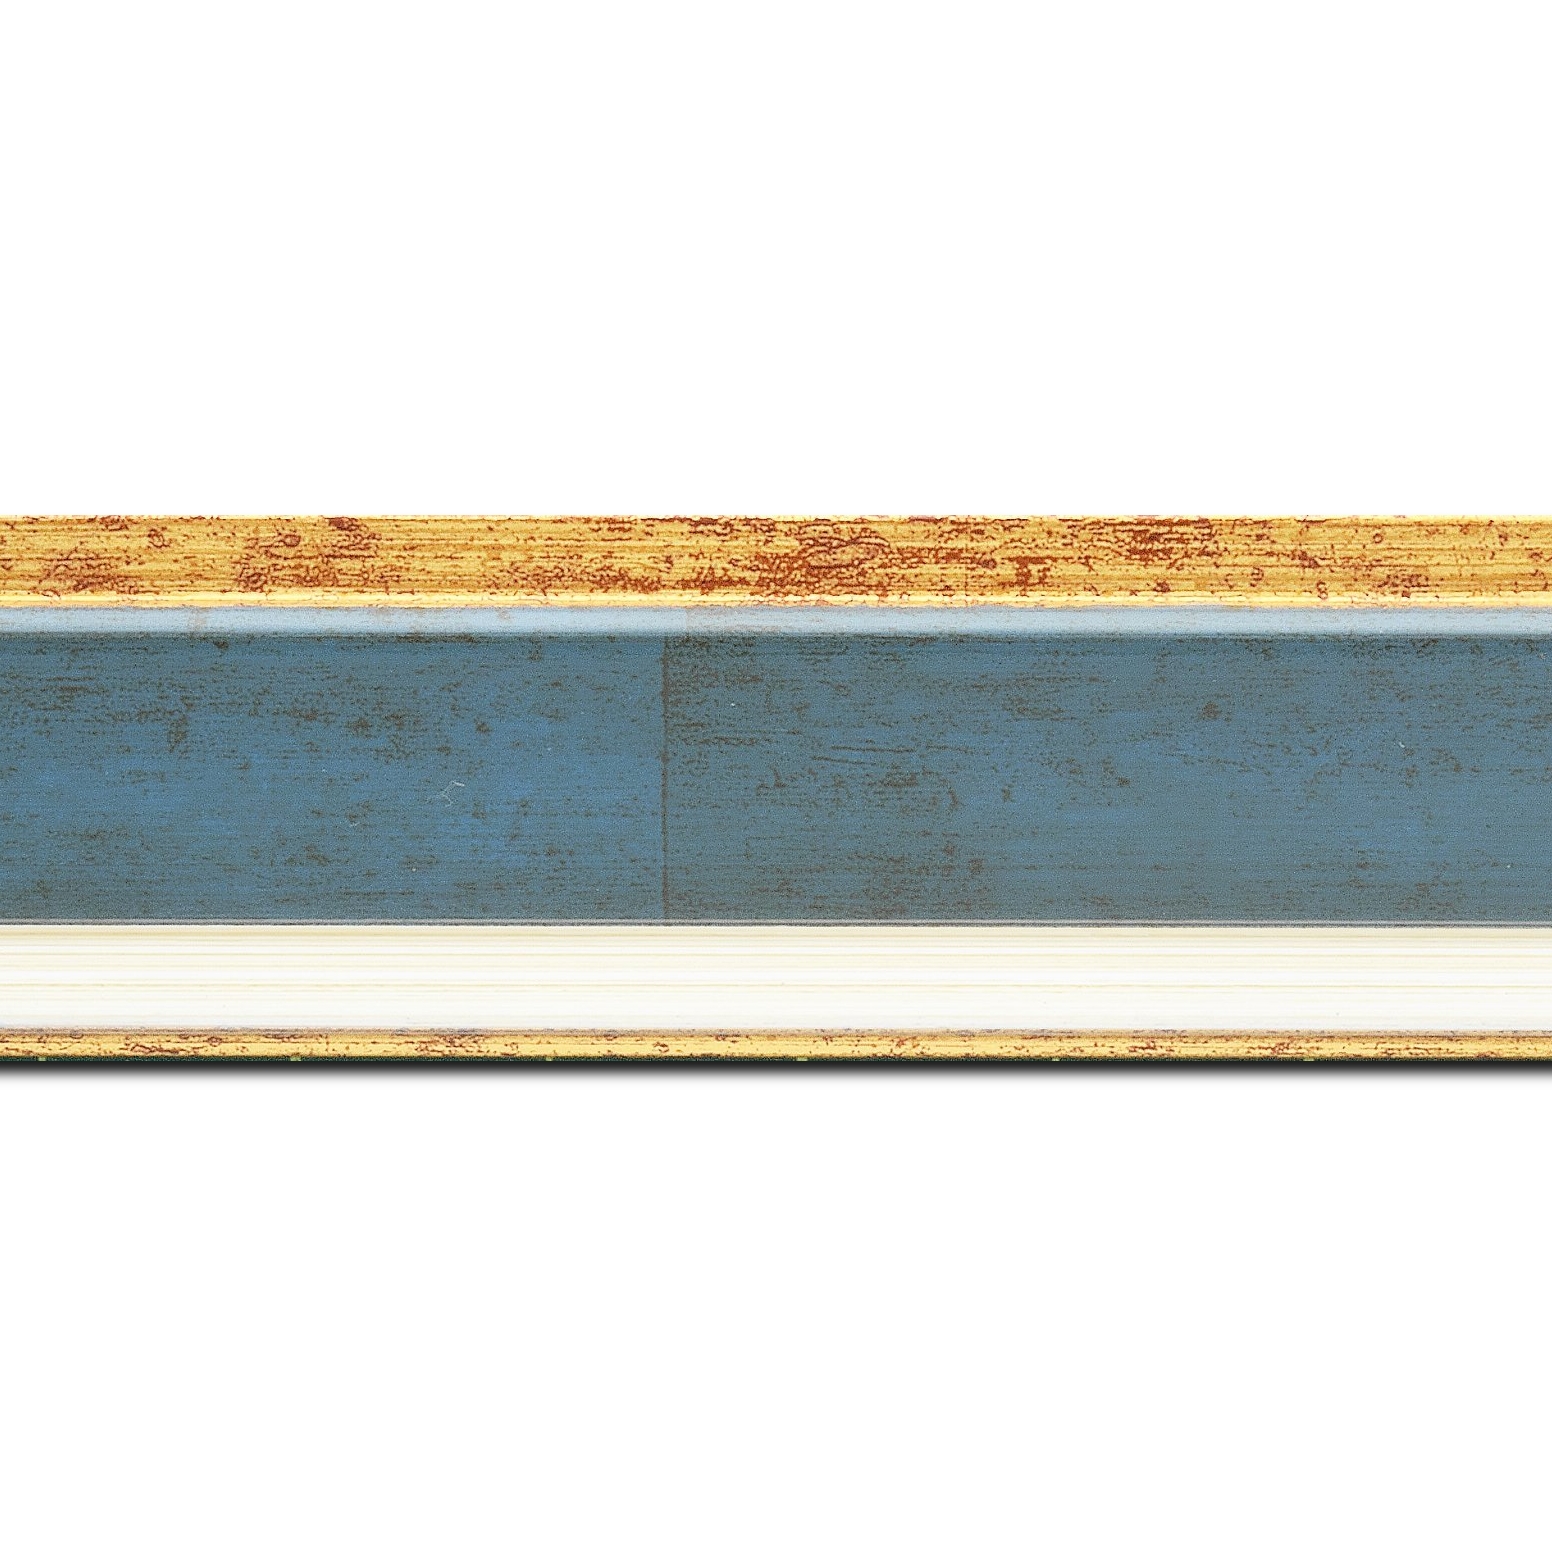 Pack par 12m, bois profil incliné largeur 5.4cm couleur bleu cobalt marie louise crème filet or intégrée(longueur baguette pouvant varier entre 2.40m et 3m selon arrivage des bois)